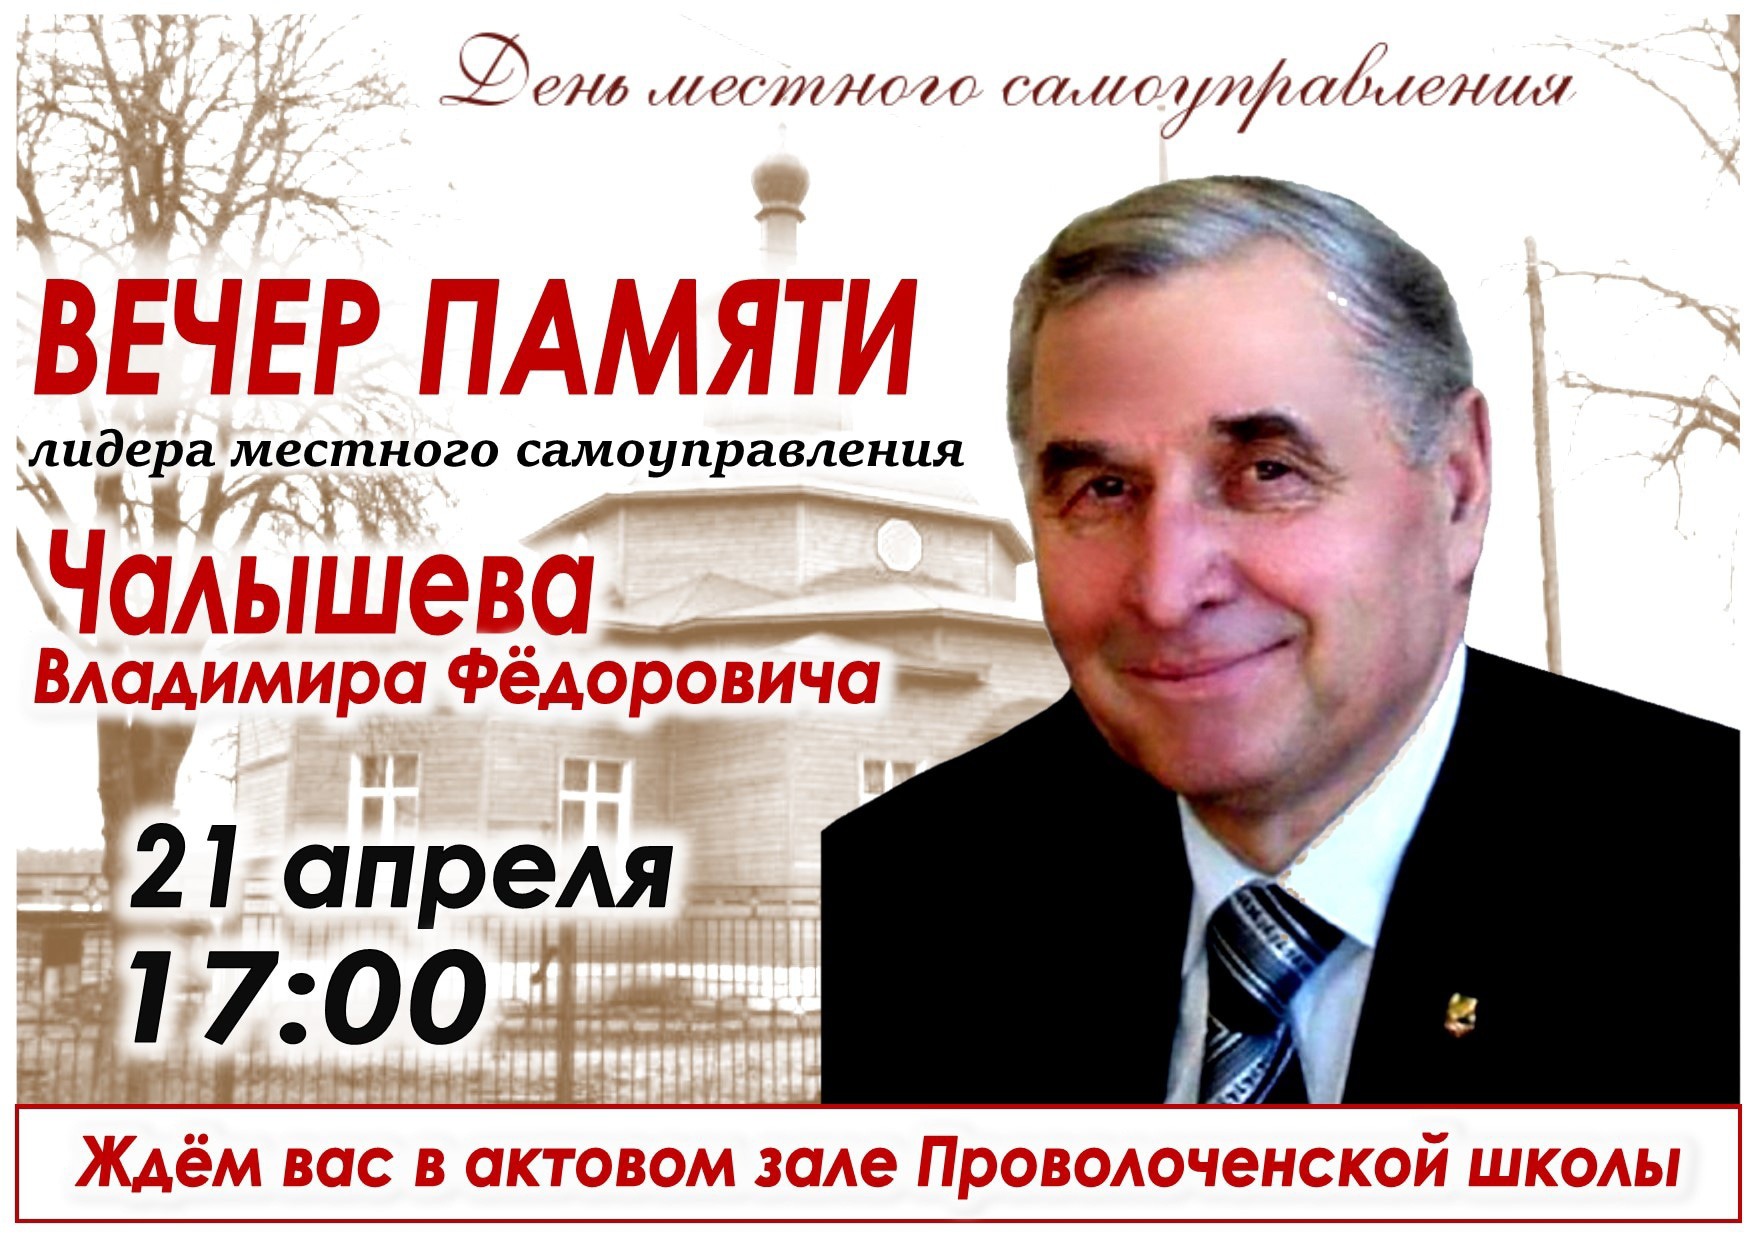 Вечер памяти лидера местного самоуправления Владимира Чалышева